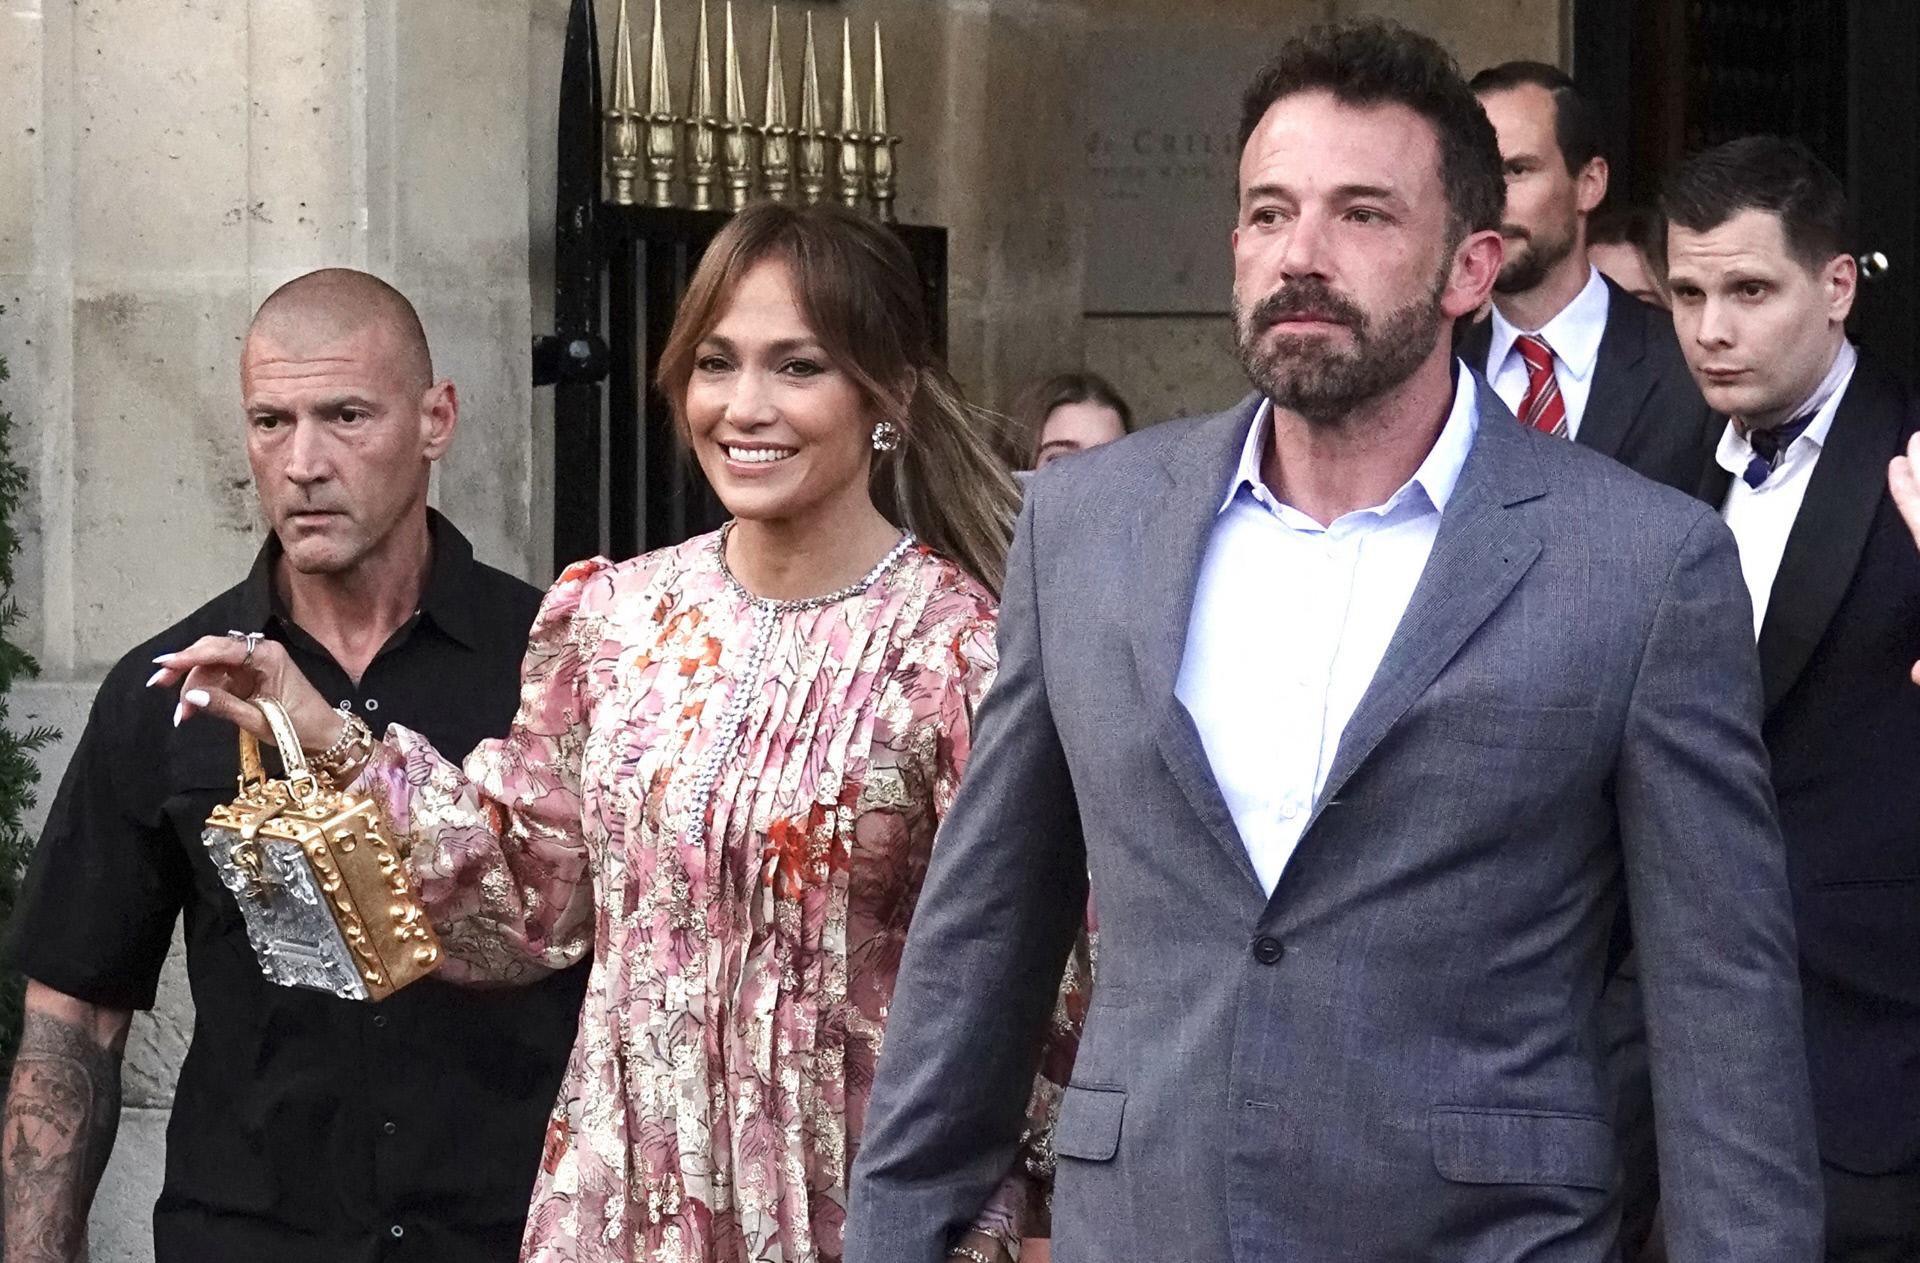 Saliendo del hotel Crillon, Jennifer Lopez apostó por una coleta efecto despeinado con flequillo cortina muy favorecedora.